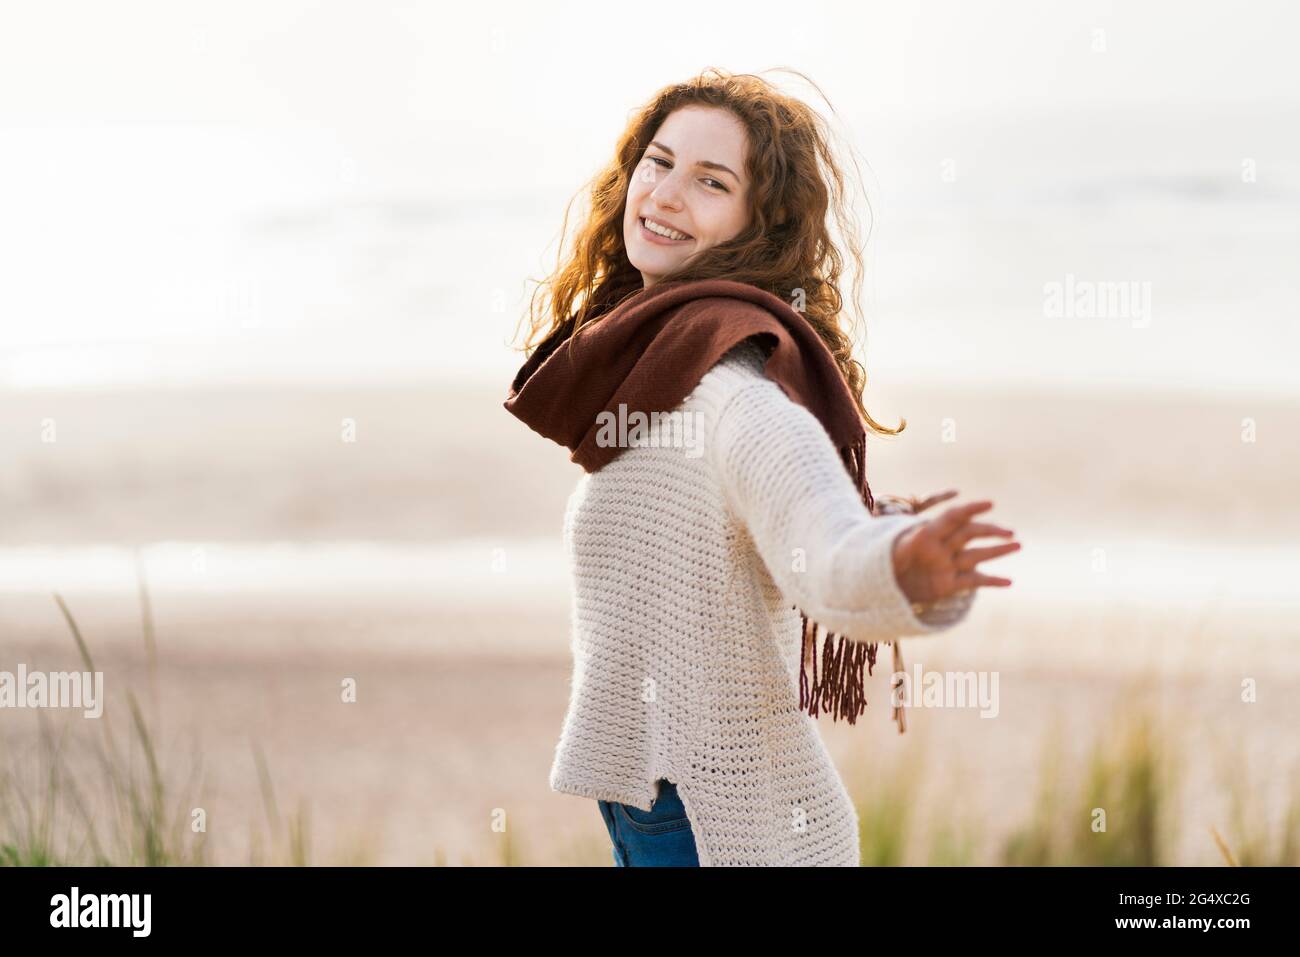 Glückliche Frau mit ausgestreckten Armen, die am Strand steht Stockfoto